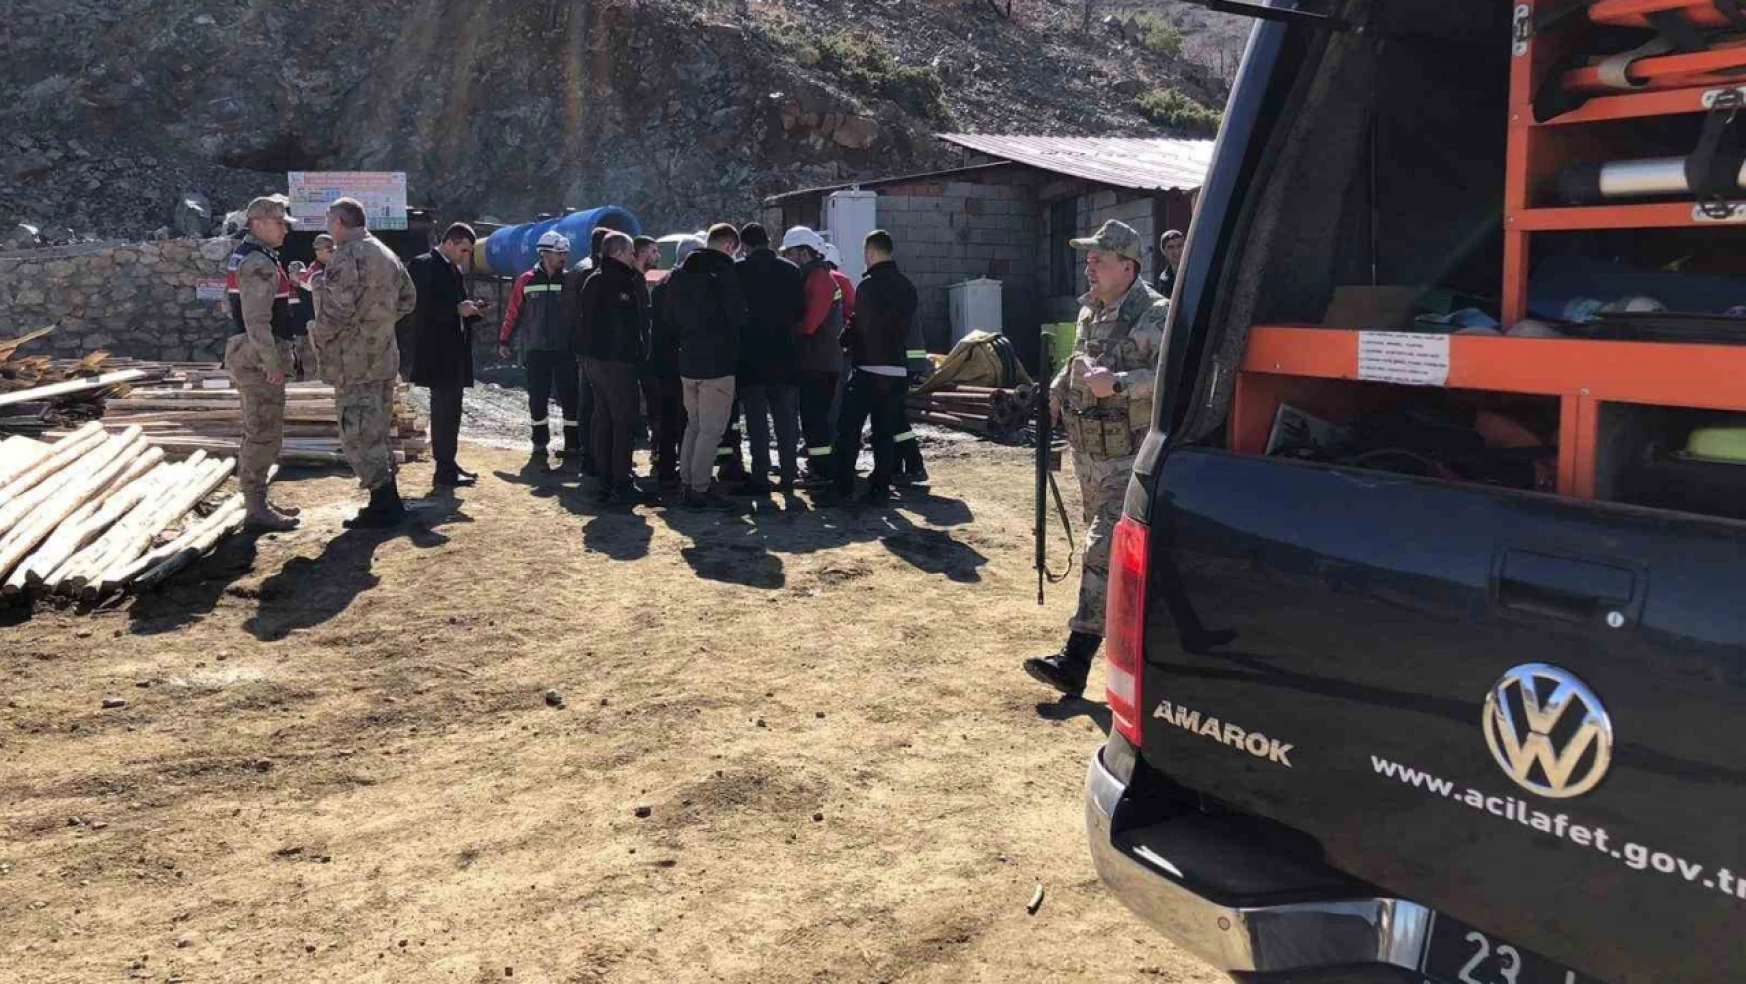 Elazığ'ın Alacakaya ilçesinde bir maden ocağında göçük meydana geldi. İlk belirlemelere göre 3 kişi toprak altında kalırken, bölgeye AFAD, UMKE, 112 Acil Sağlık ve güvenlik güçleri sevk edildi.